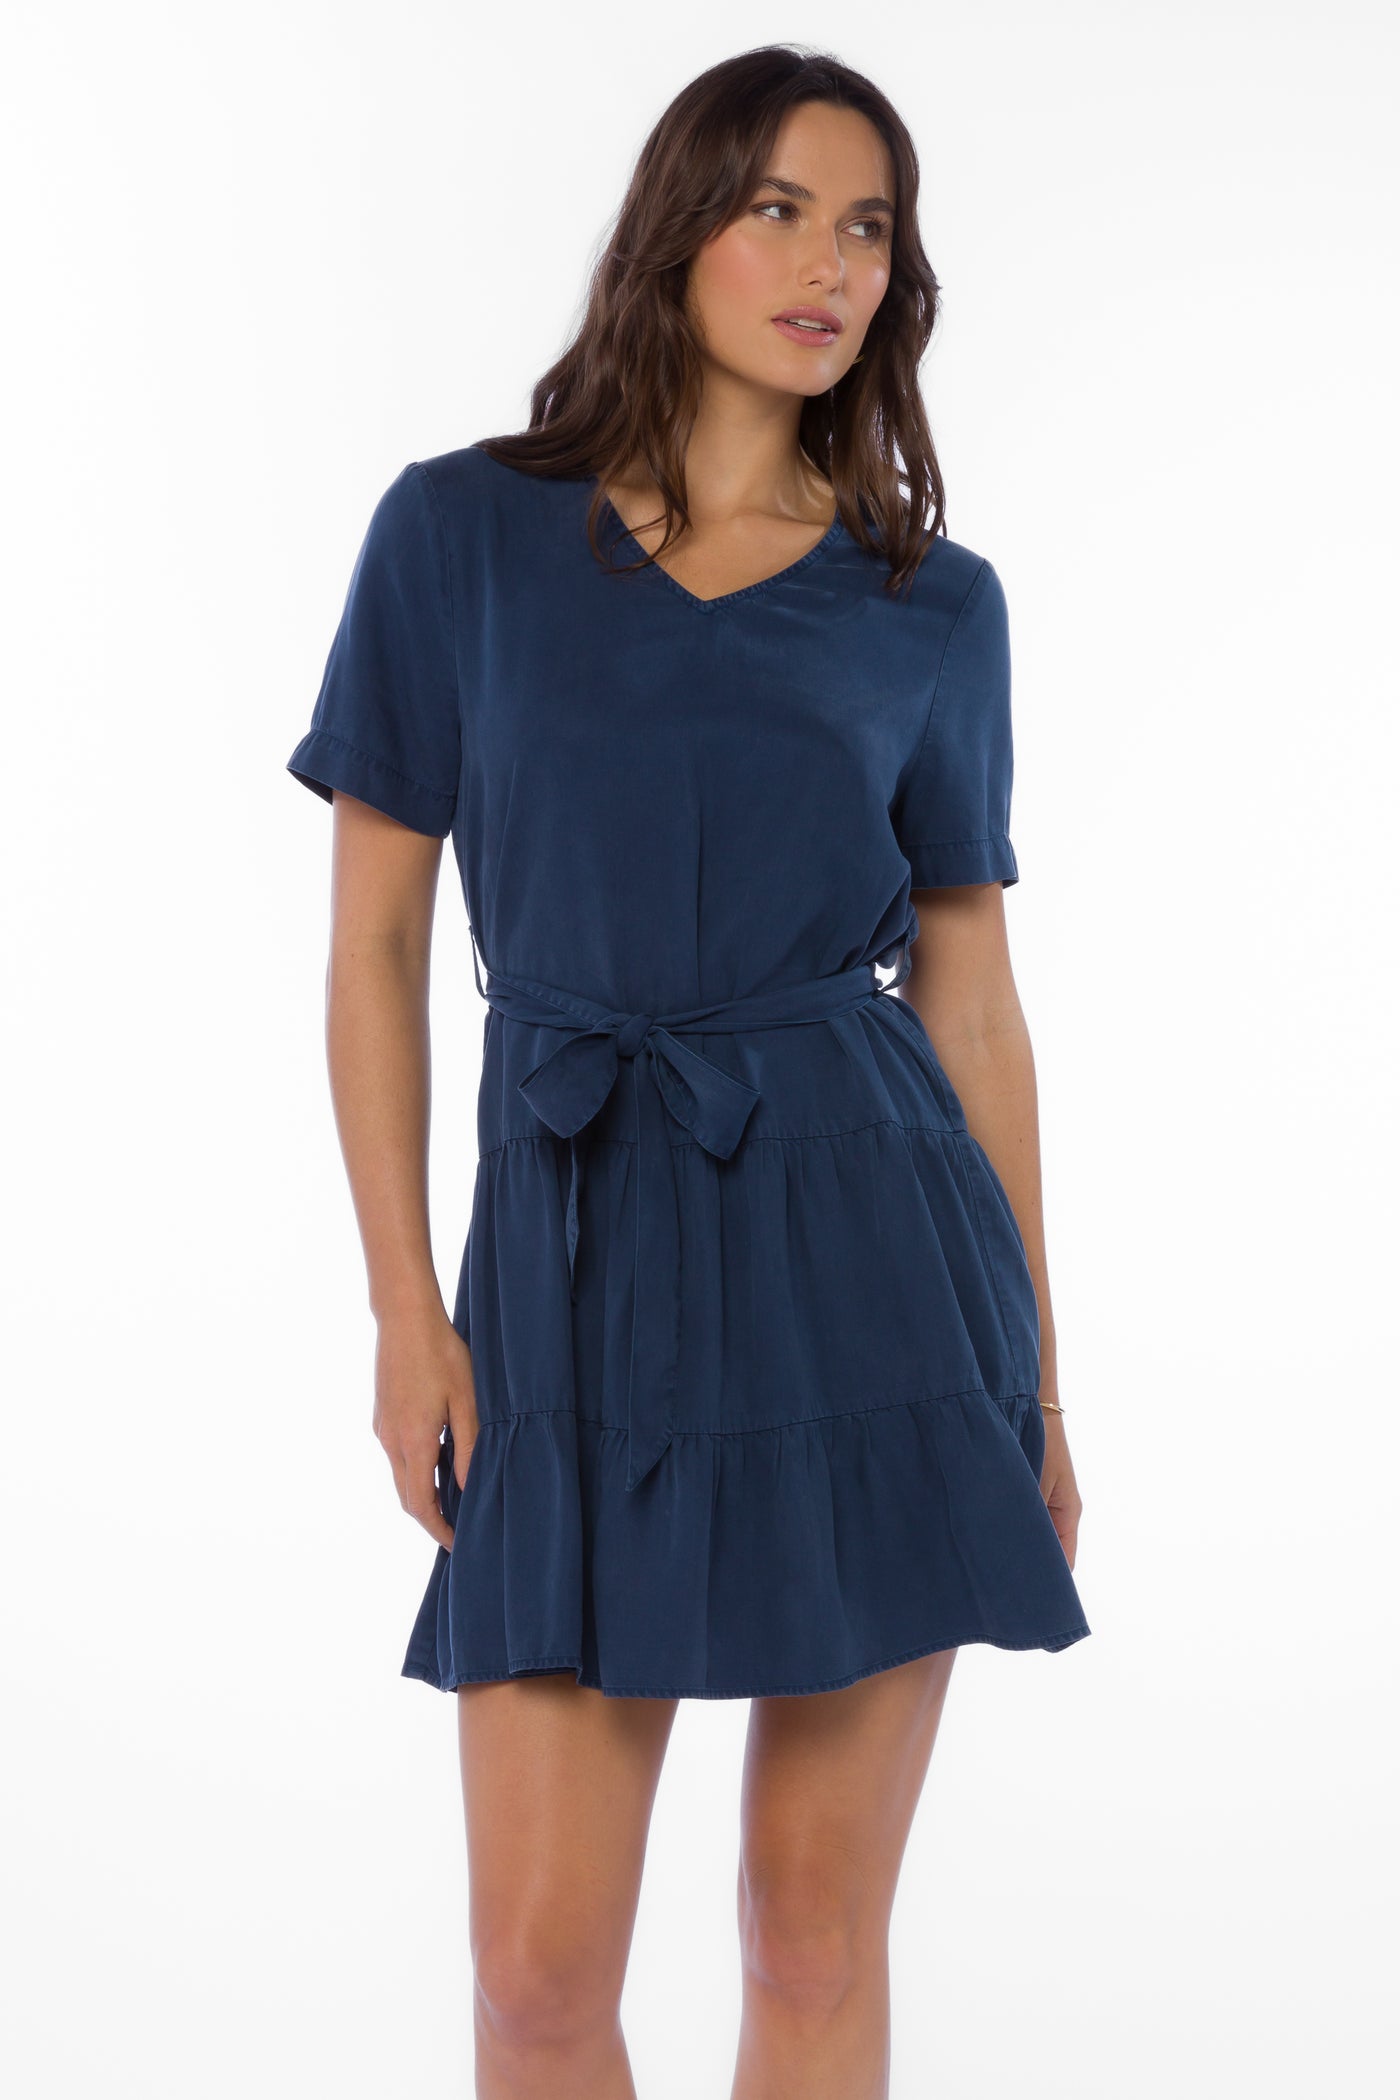 Arrow French Navy Dress - Dresses - Velvet Heart Clothing